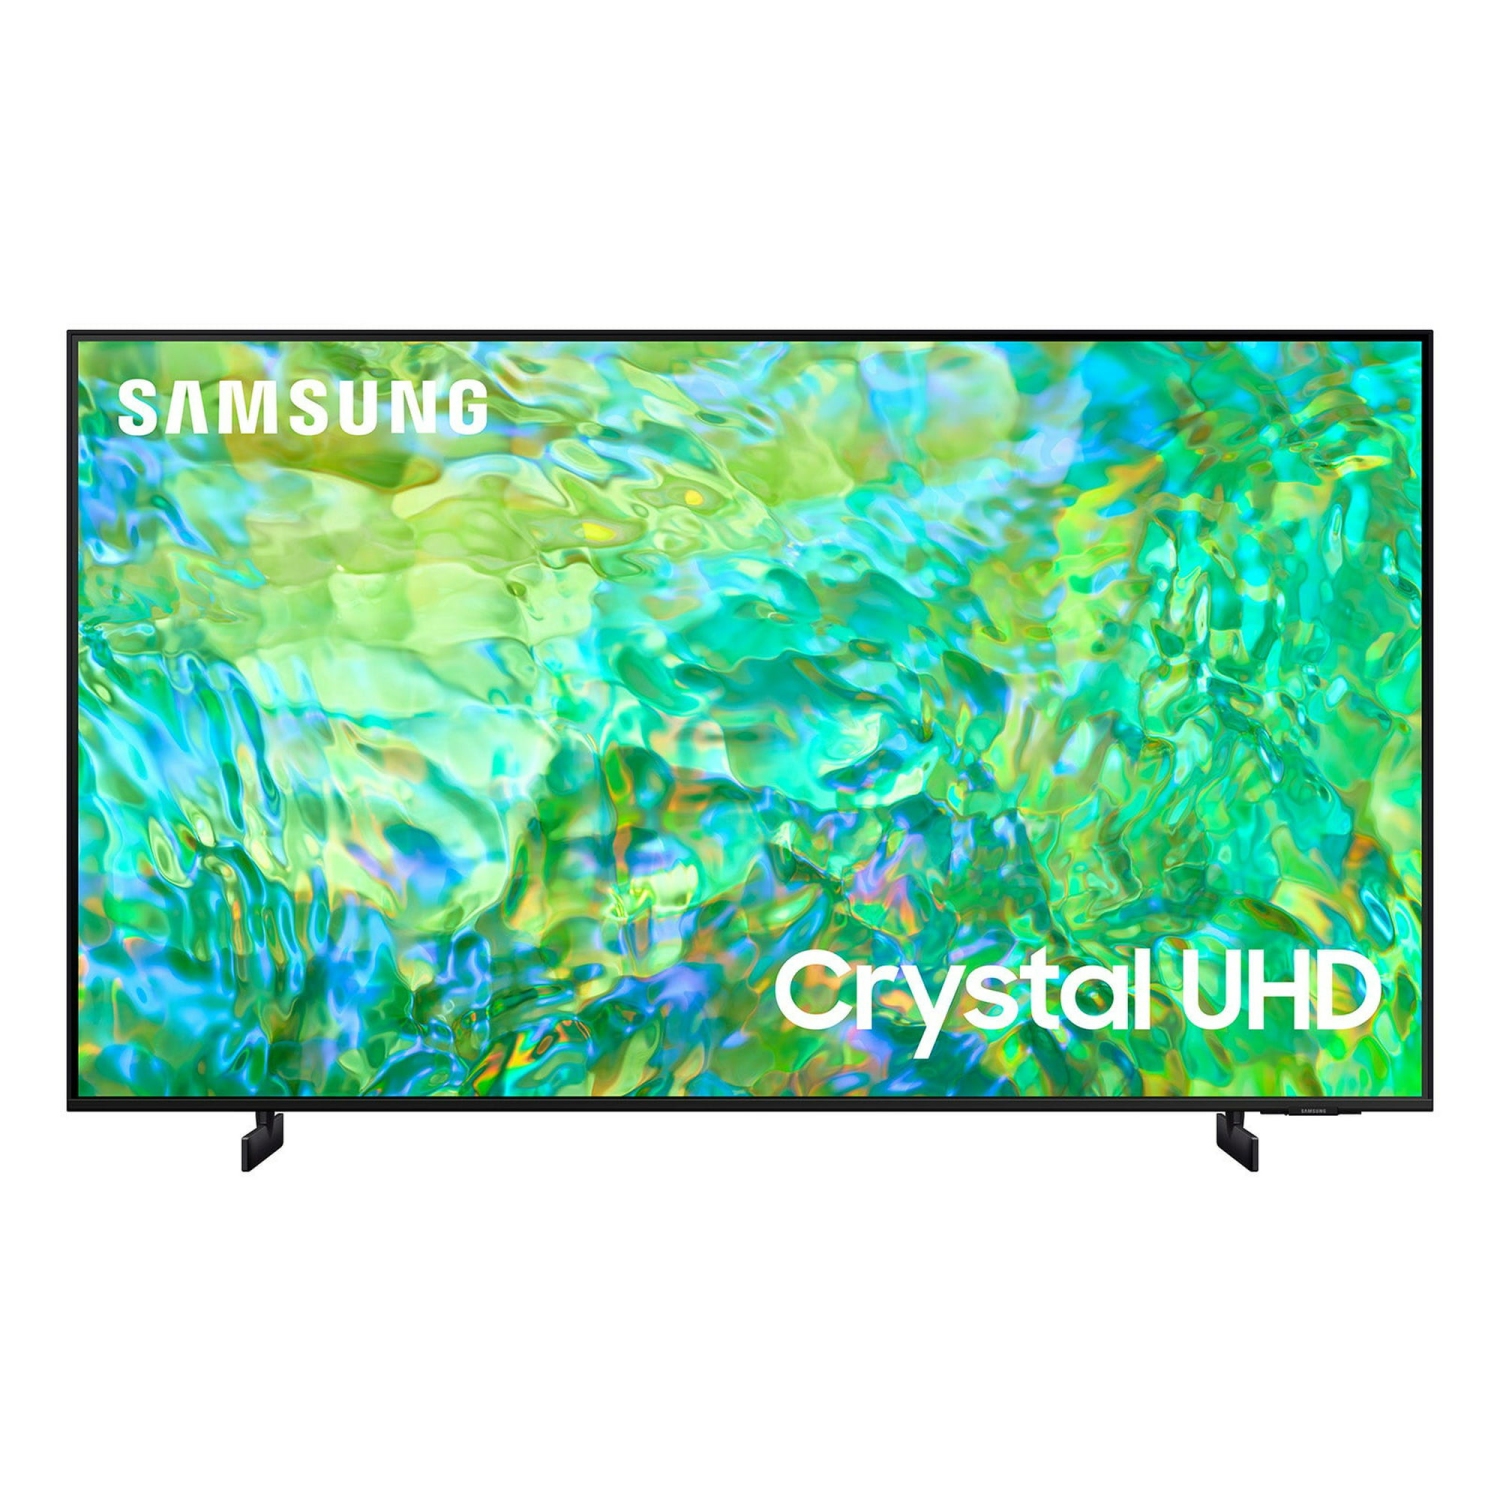 REFURBISHED (GOOD) - SAMSUNG 75" Class CU8000B Crystal UHD 4K Smart TV (UN75CU8000)